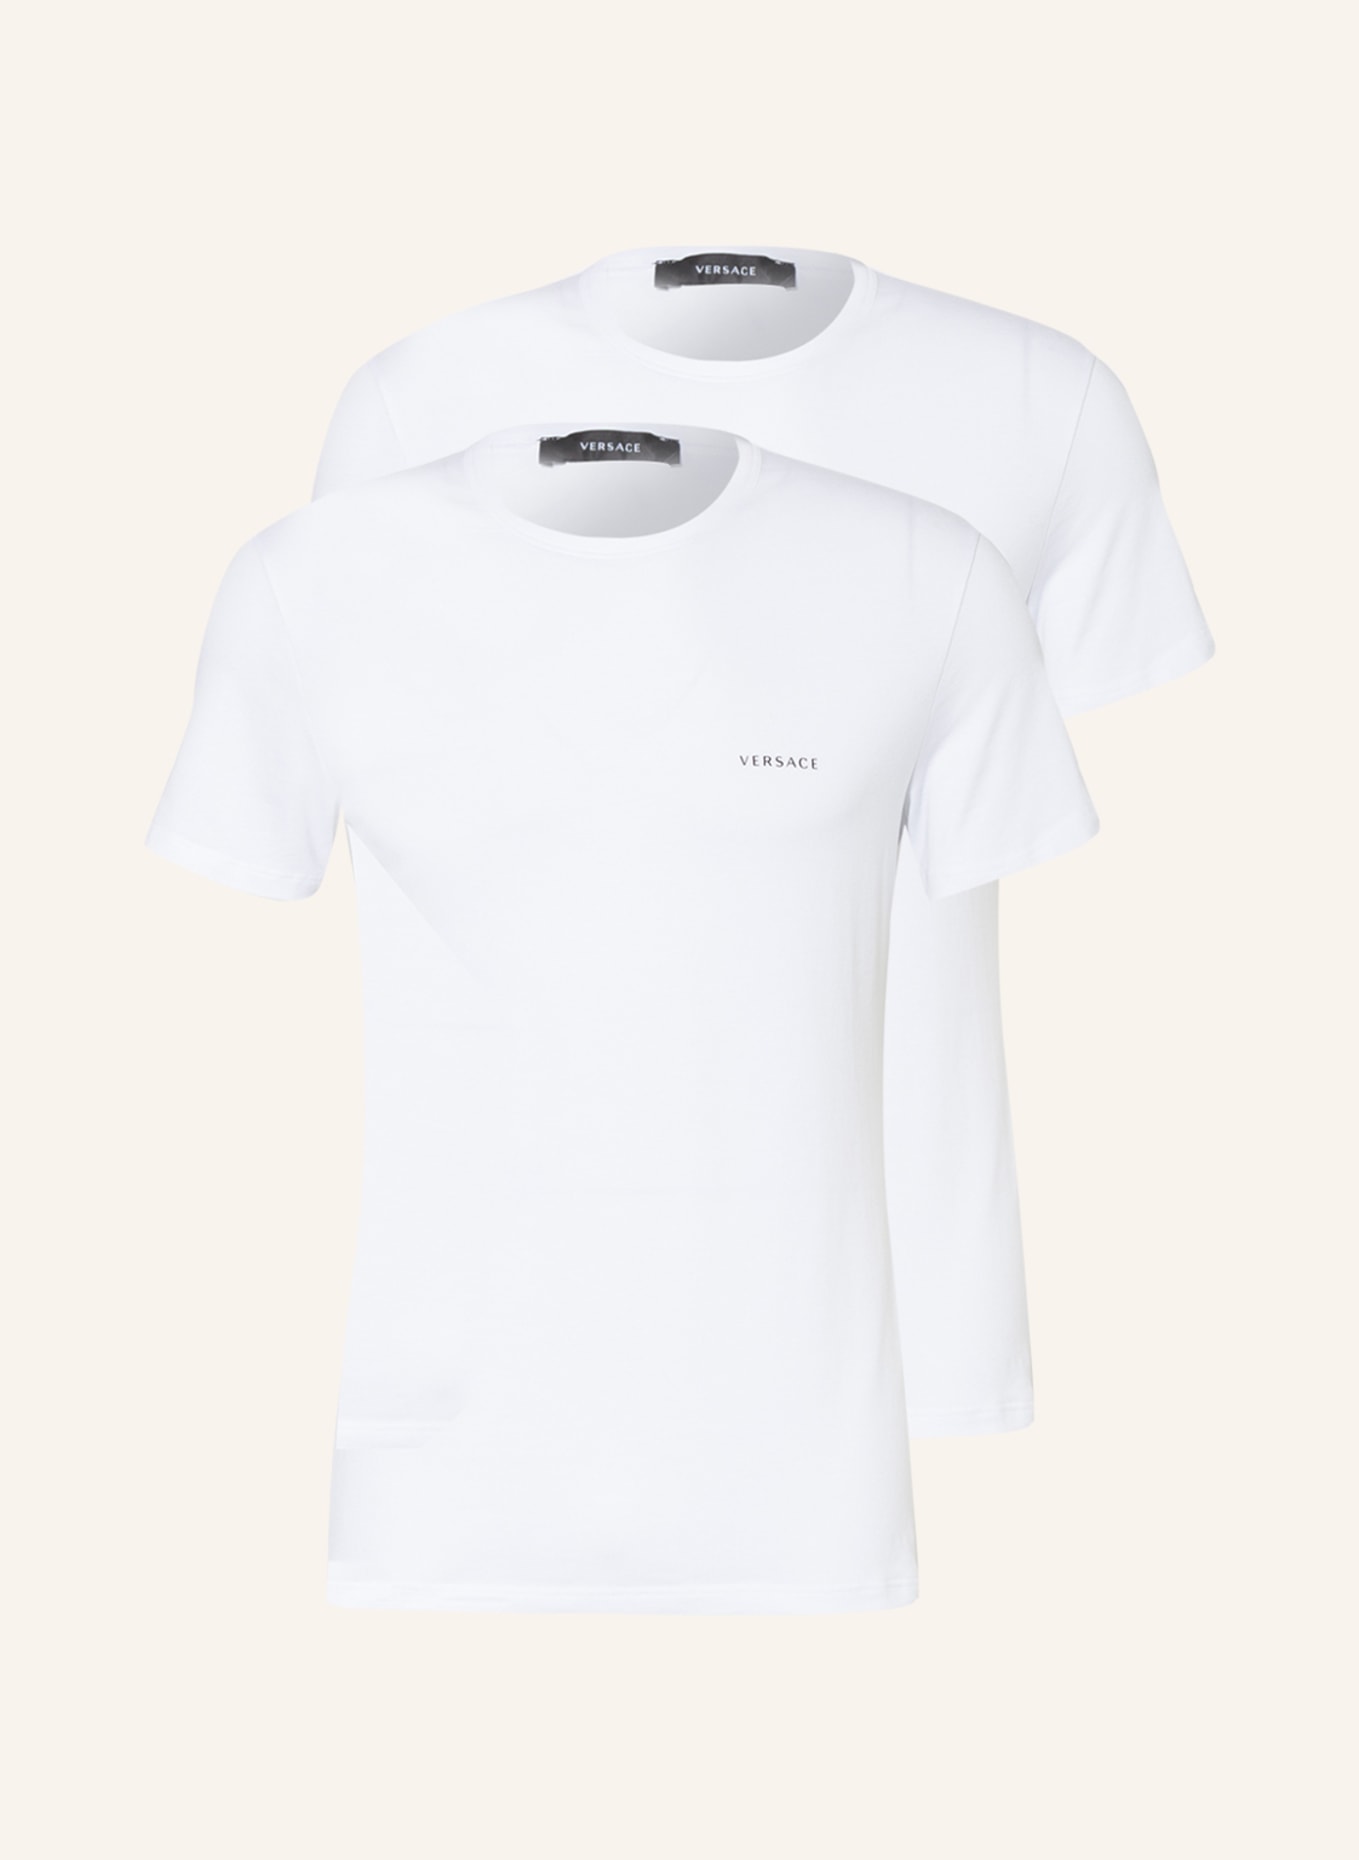 VERSACE 2er-Pack T-Shirts, Farbe: WEISS (Bild 1)